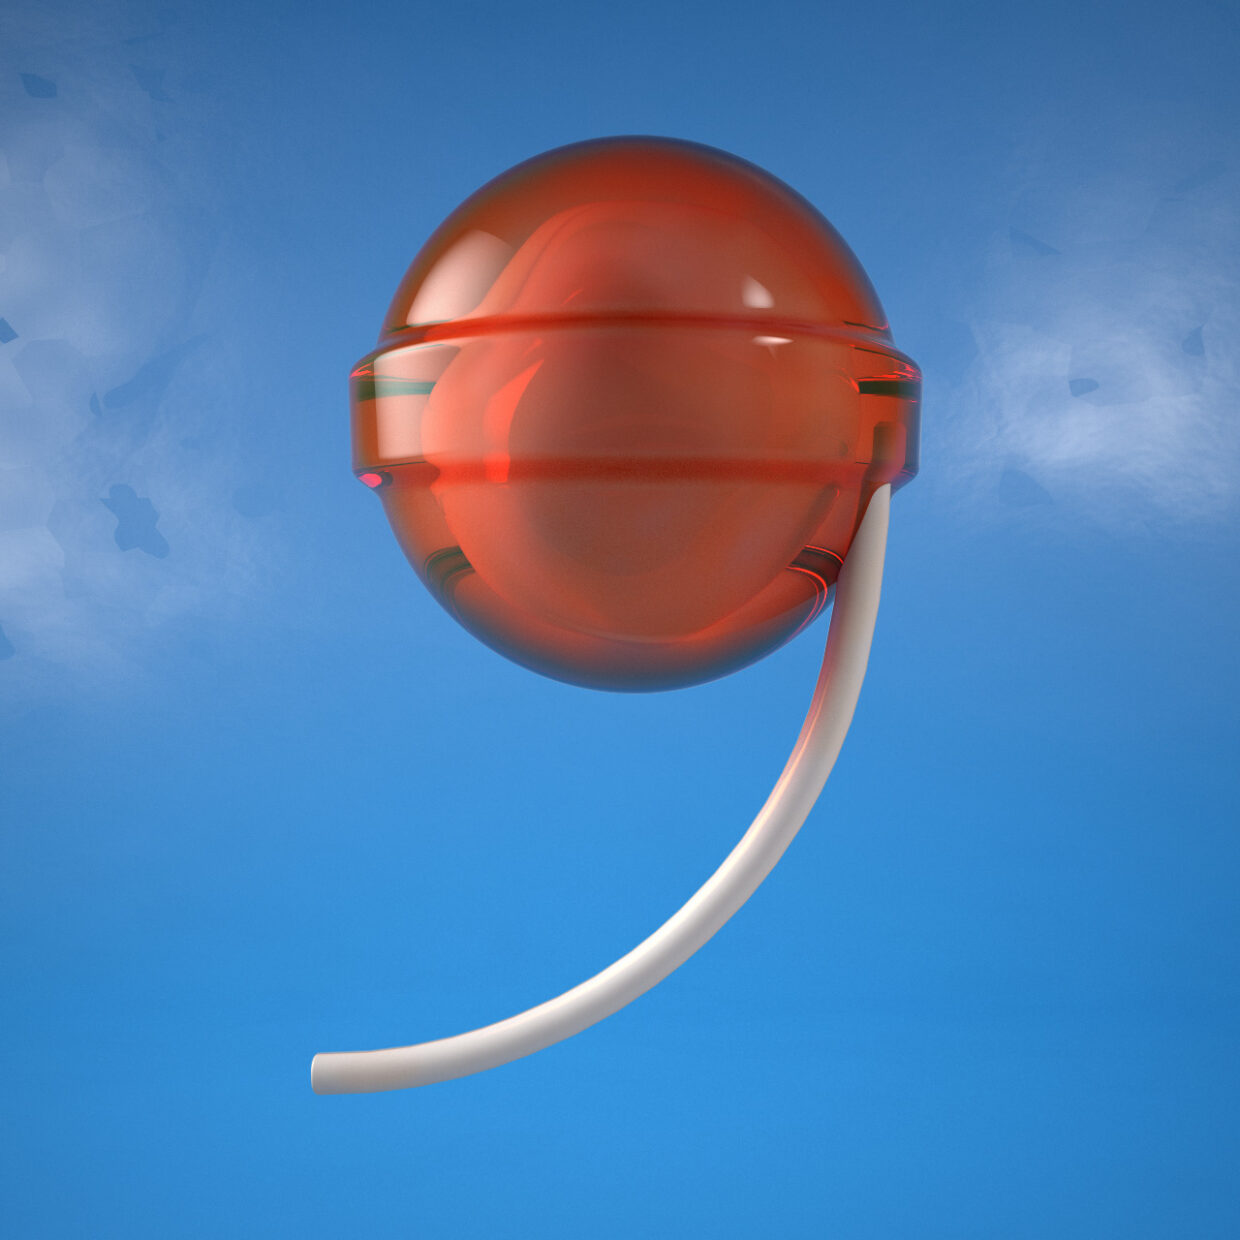 3D illustration of a nine-shaped lollipop